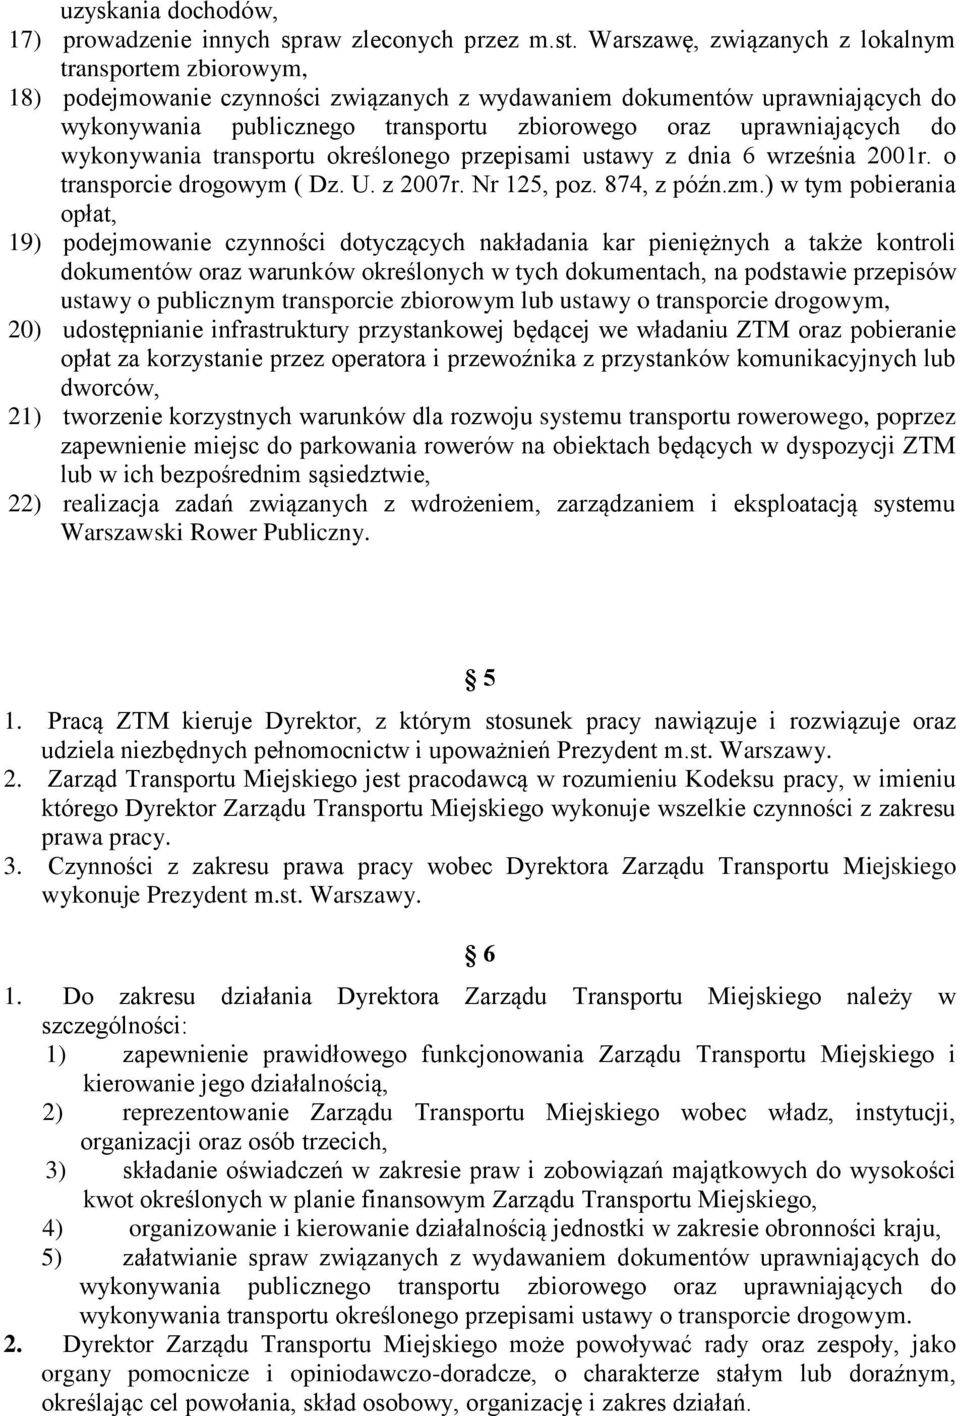 uprawniających do wykonywania transportu określonego przepisami ustawy z dnia 6 września 2001r. o transporcie drogowym ( Dz. U. z 2007r. Nr 125, poz. 874, z późn.zm.